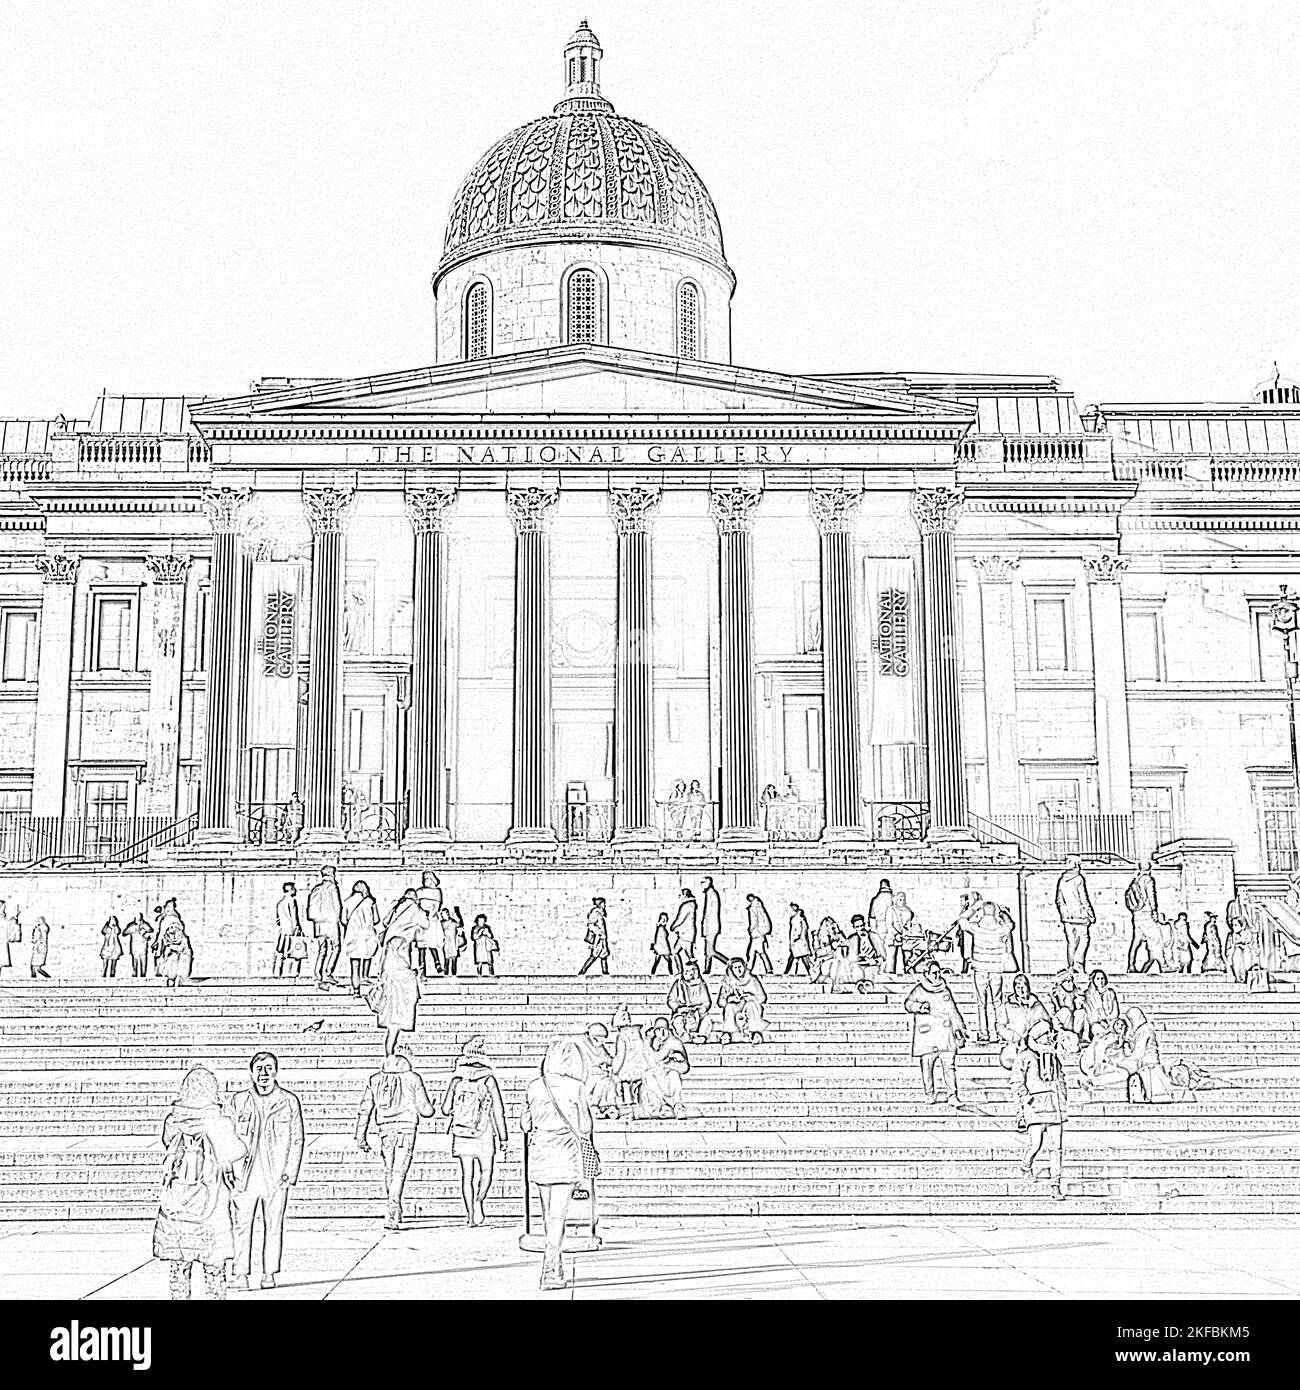 Illustration der National Gallery am Trafalgar Square London, Großbritannien. Stockfoto